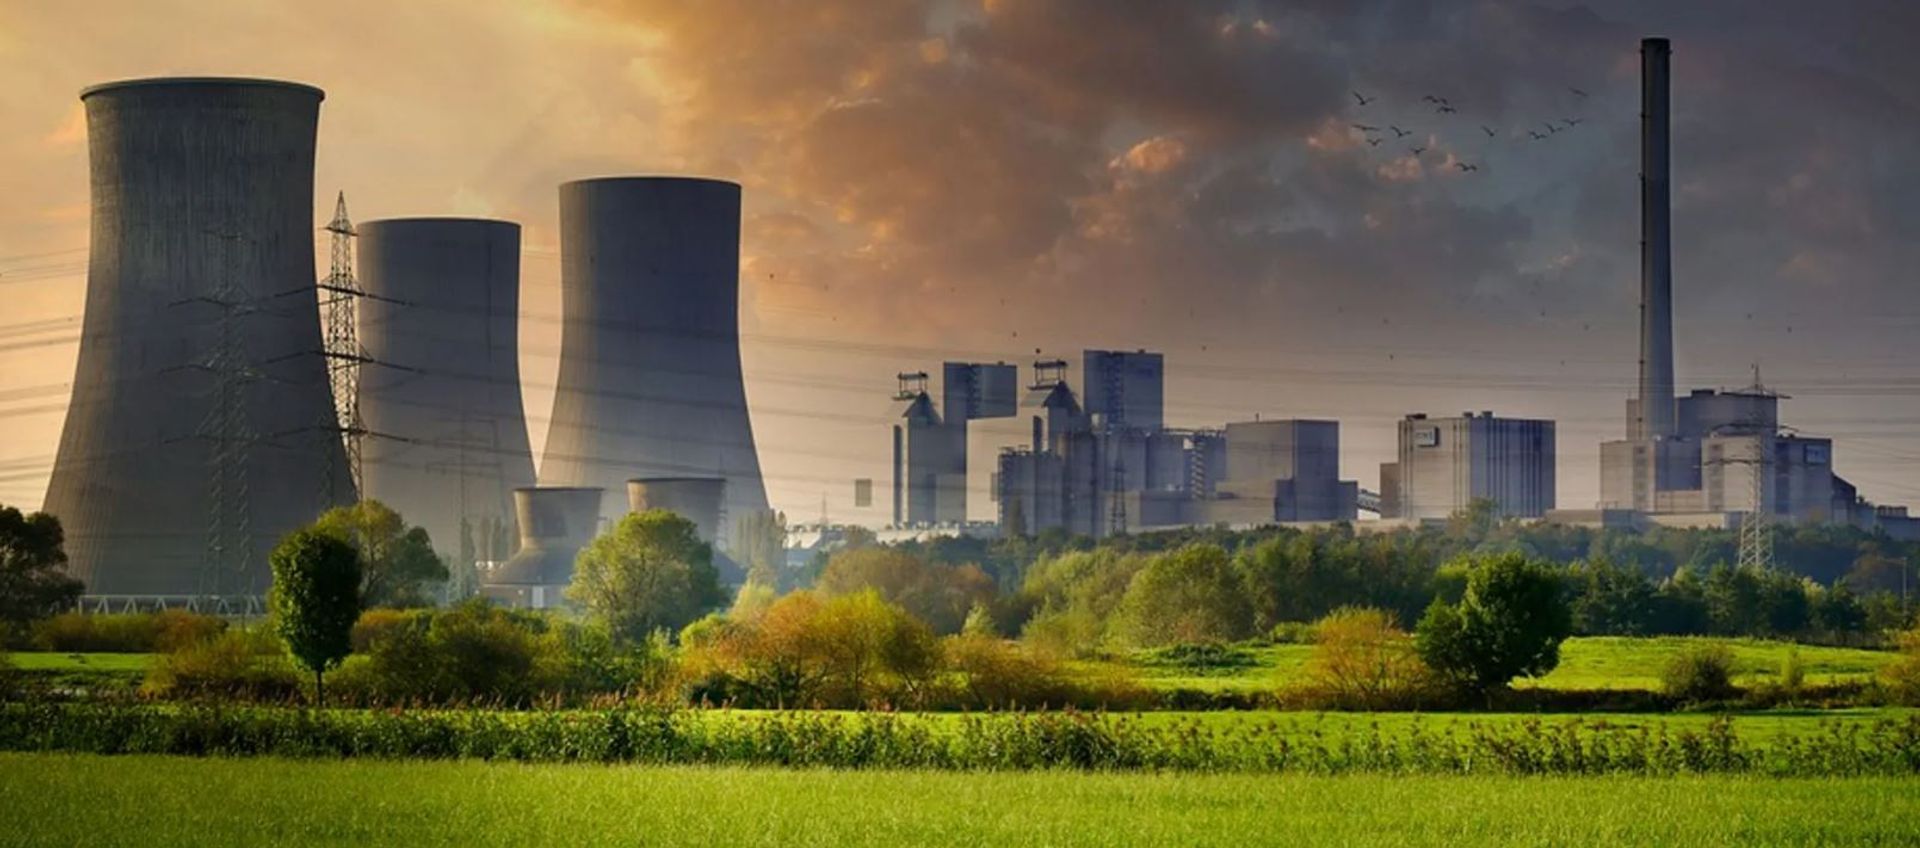 Polska pozostaje kluczowym partnerem USA w realizacji projektu pierwszej elektrowni jądrowej